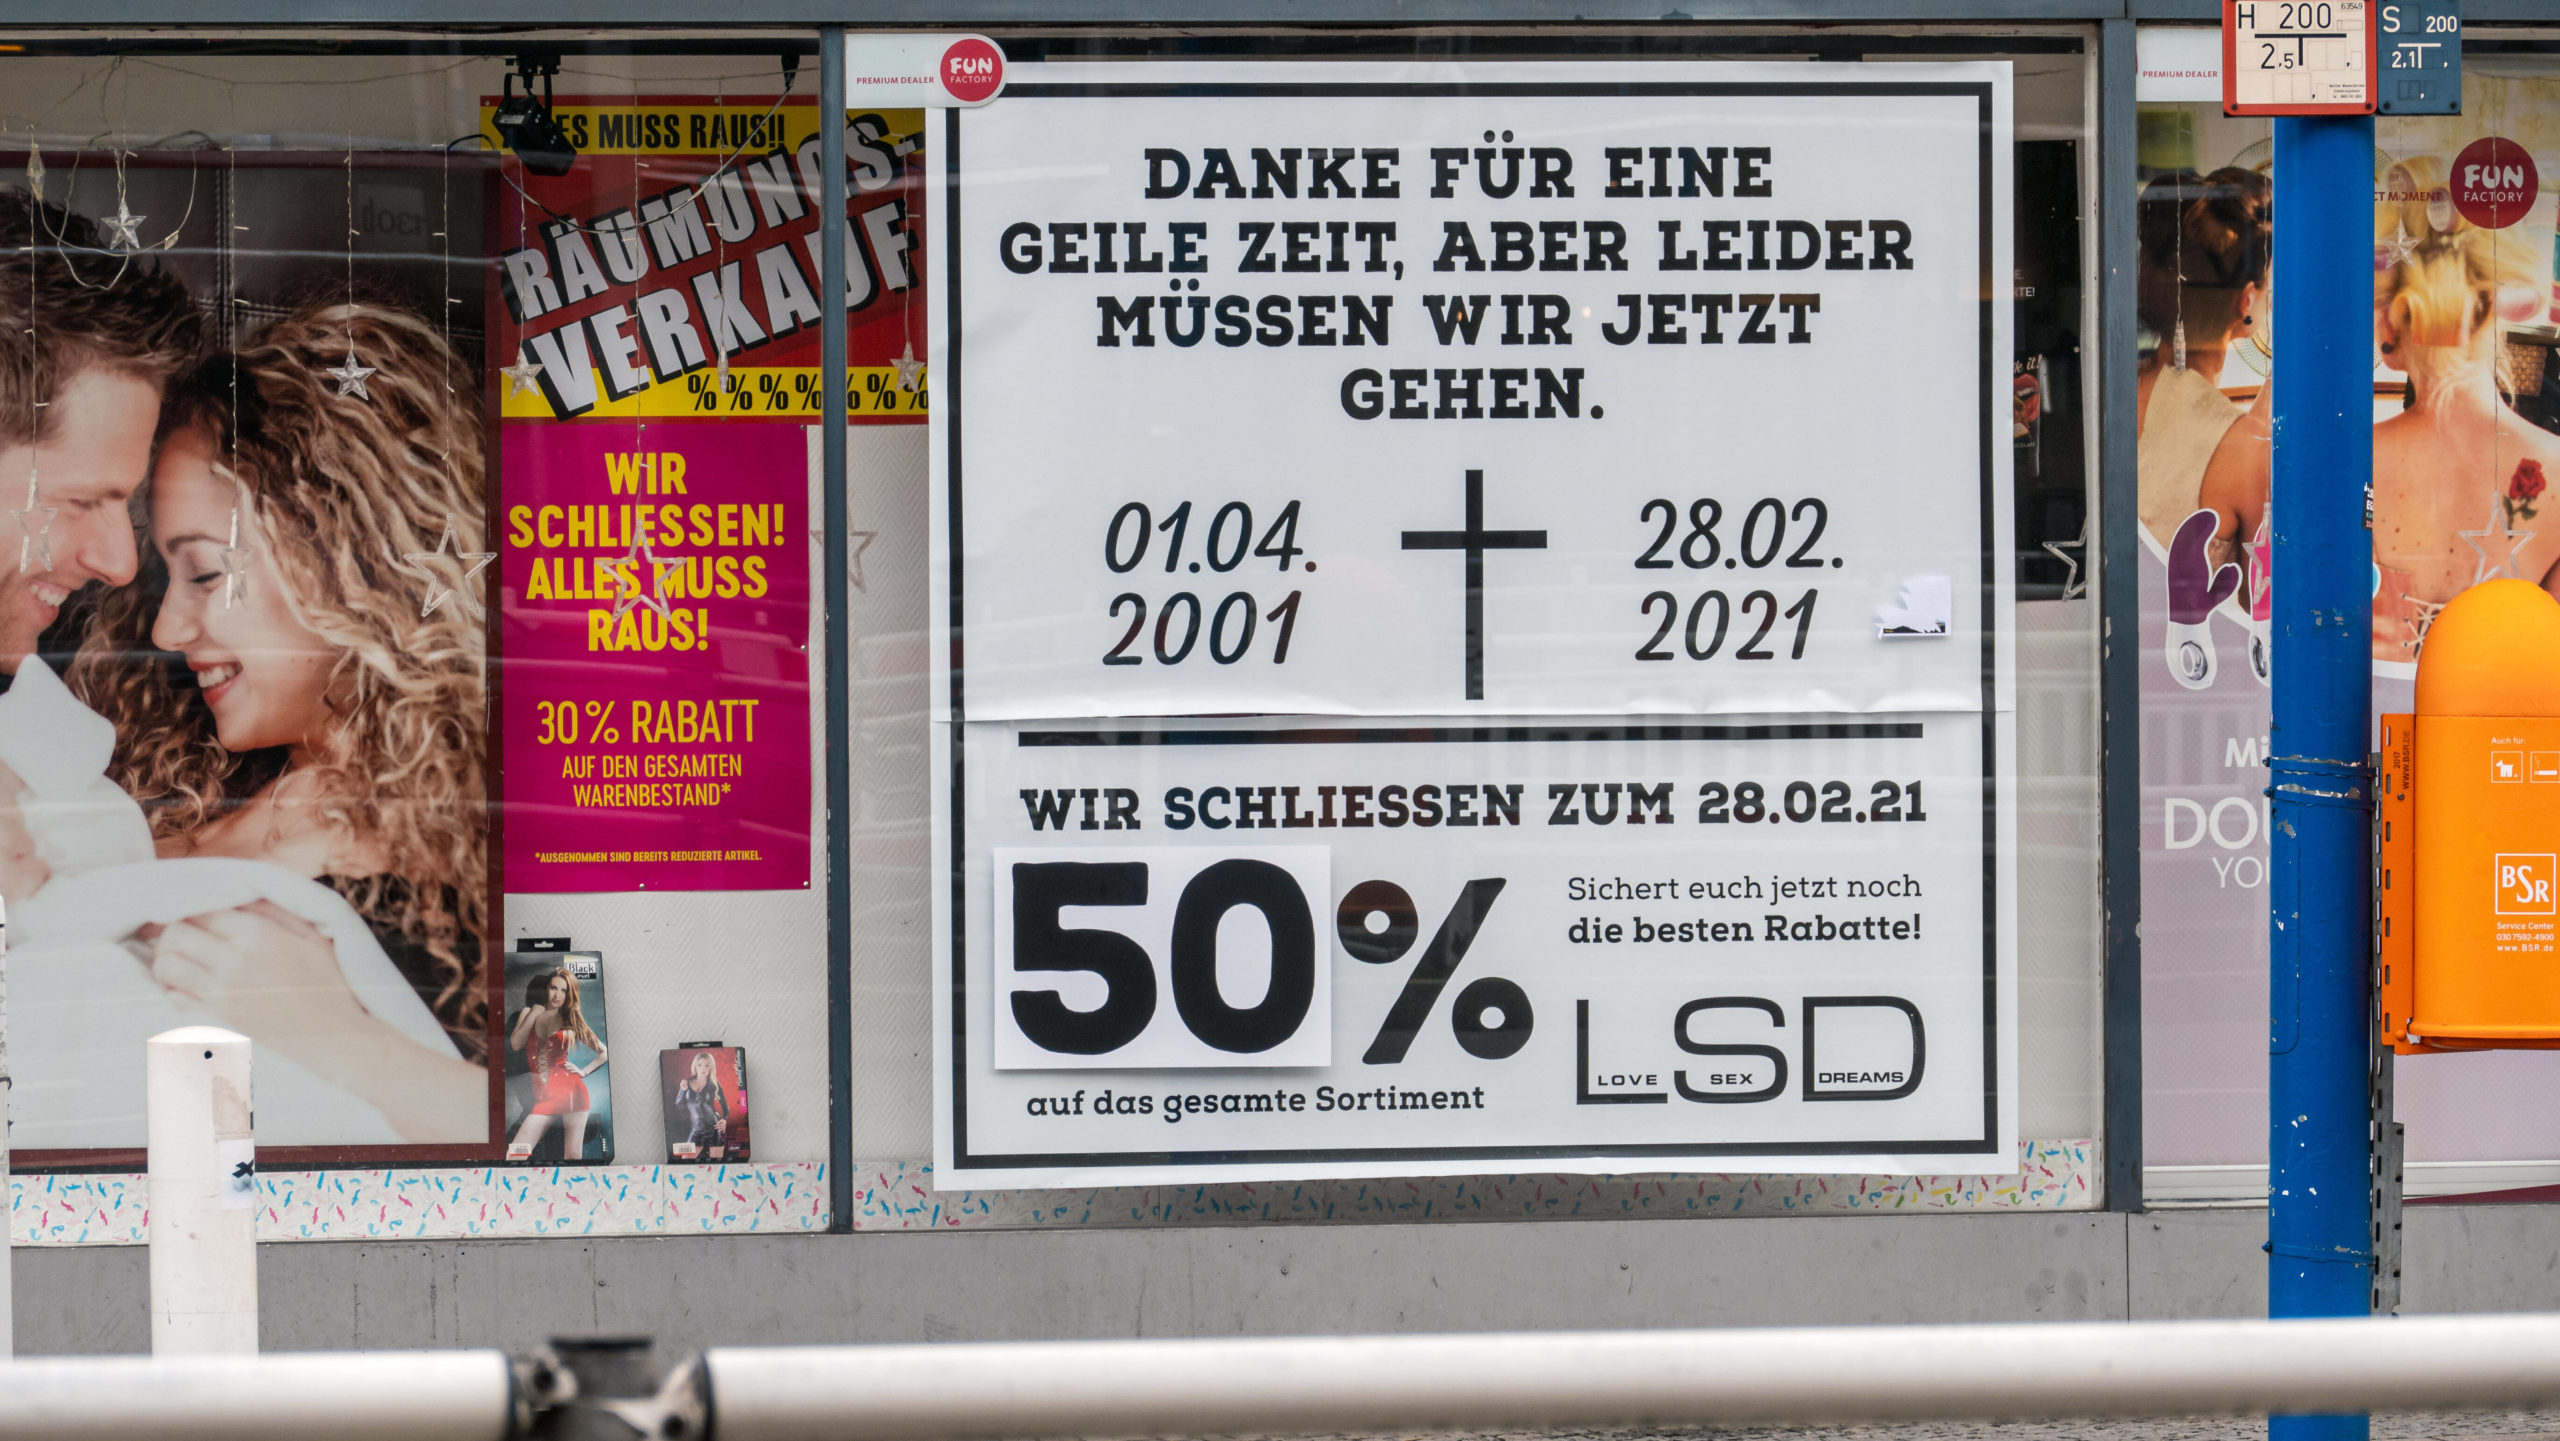 Der Sexshop LSD in der Kantstraße muss im Februar 2021 schliessen. Foto: Imago/Stefan Zeitz